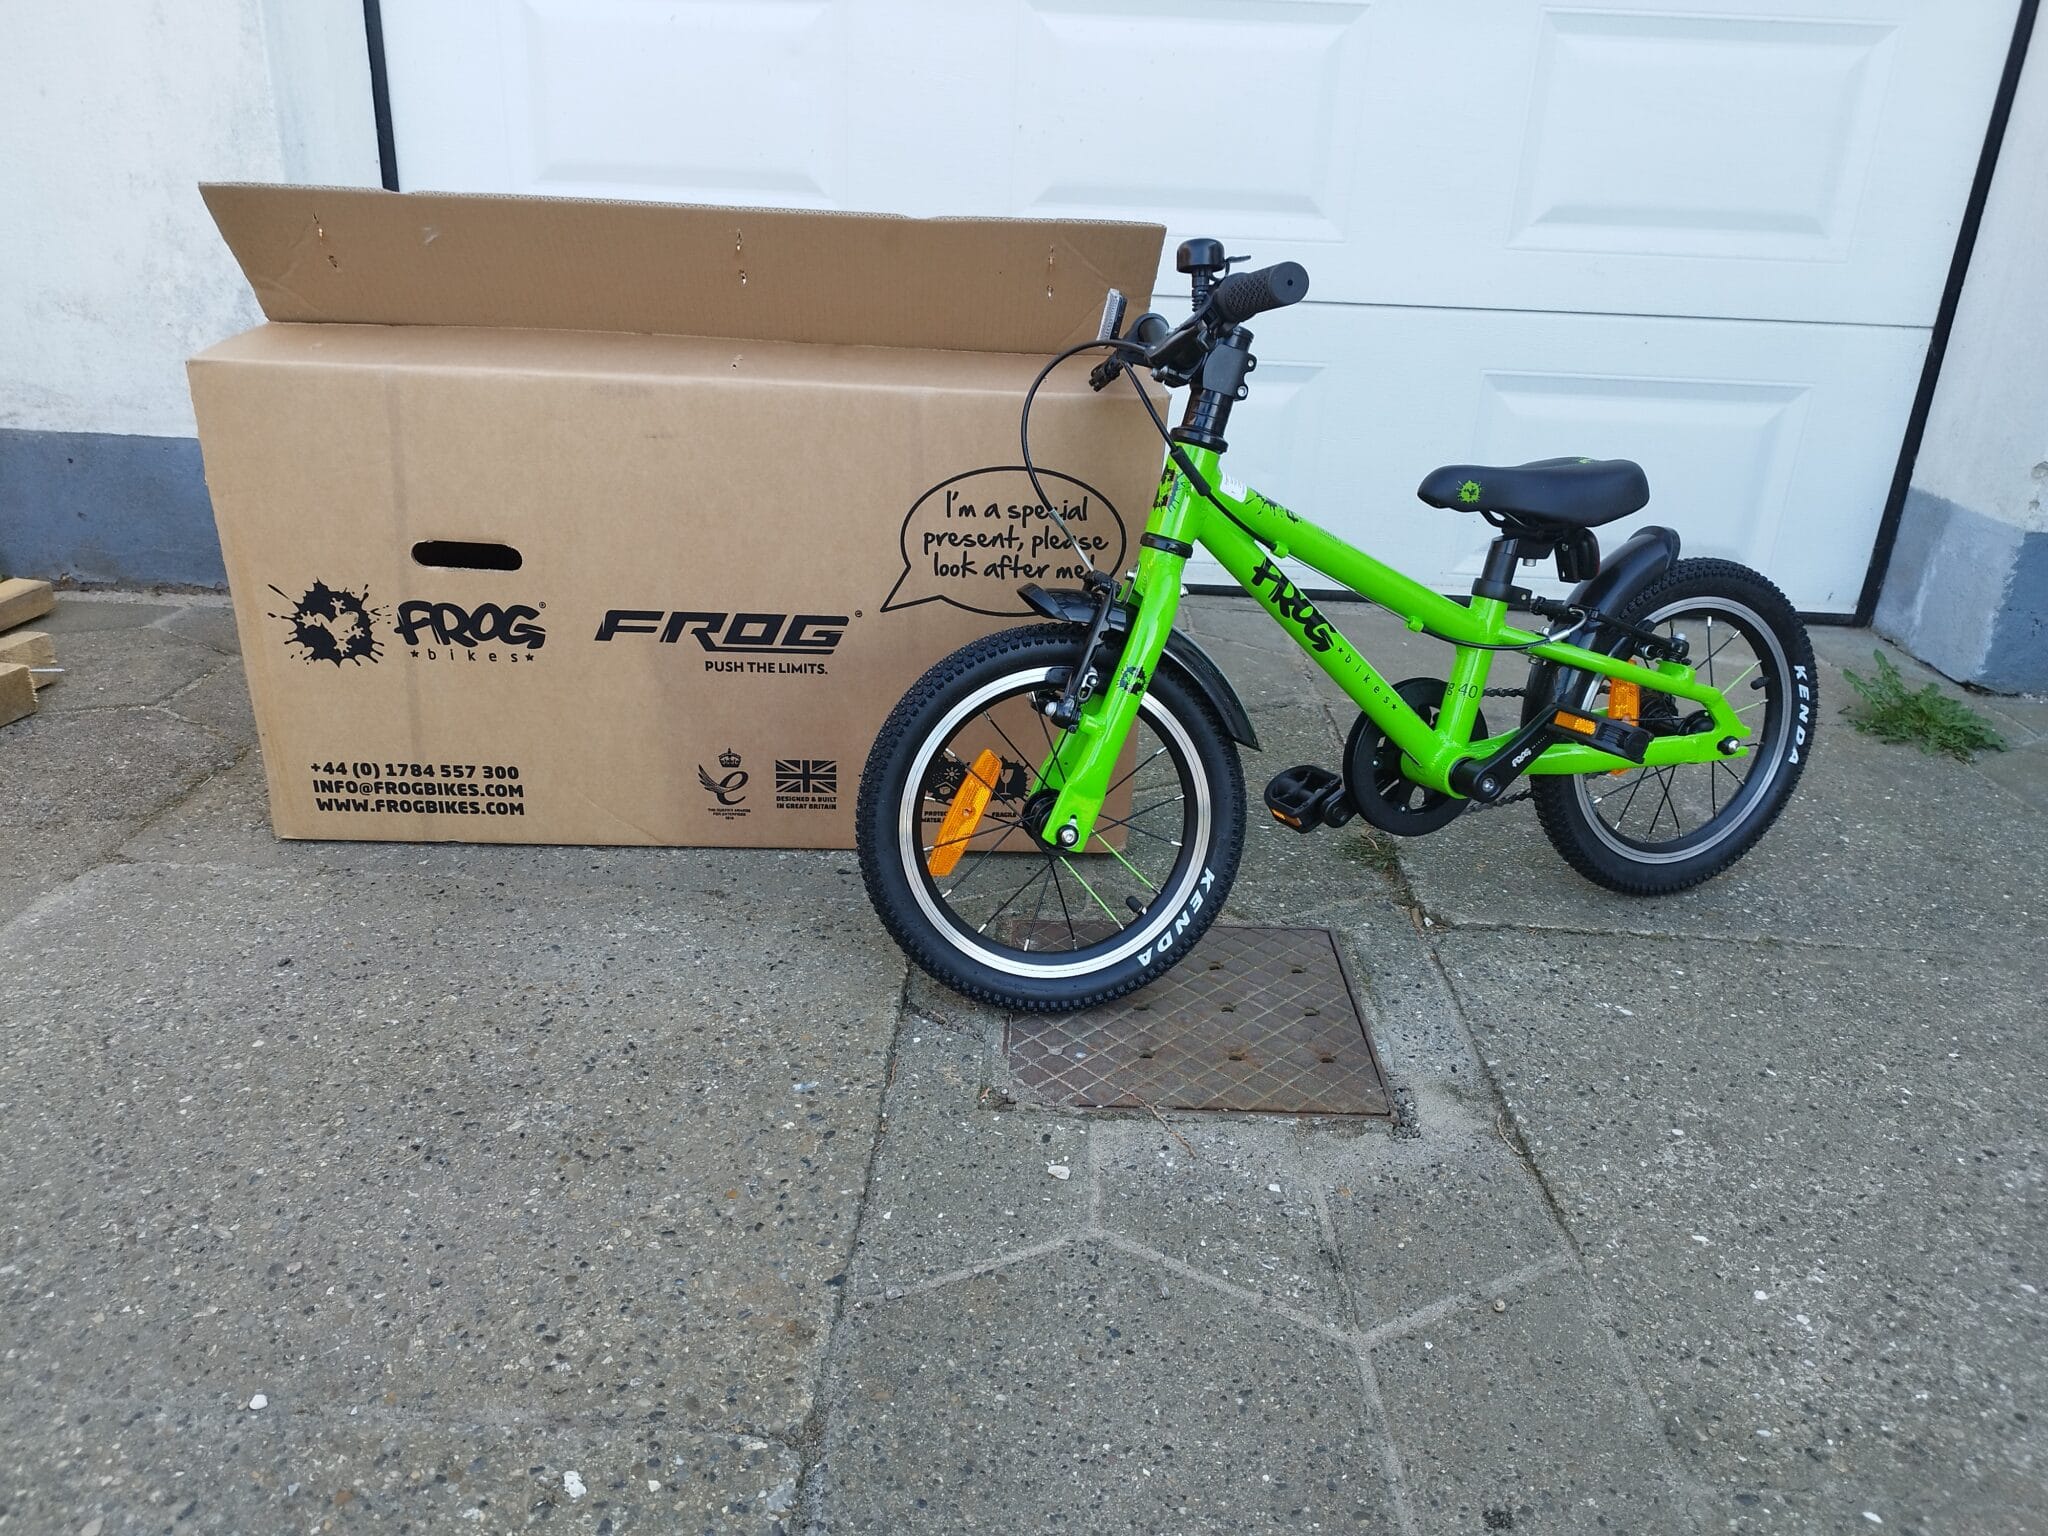 Fra kasse til cykel